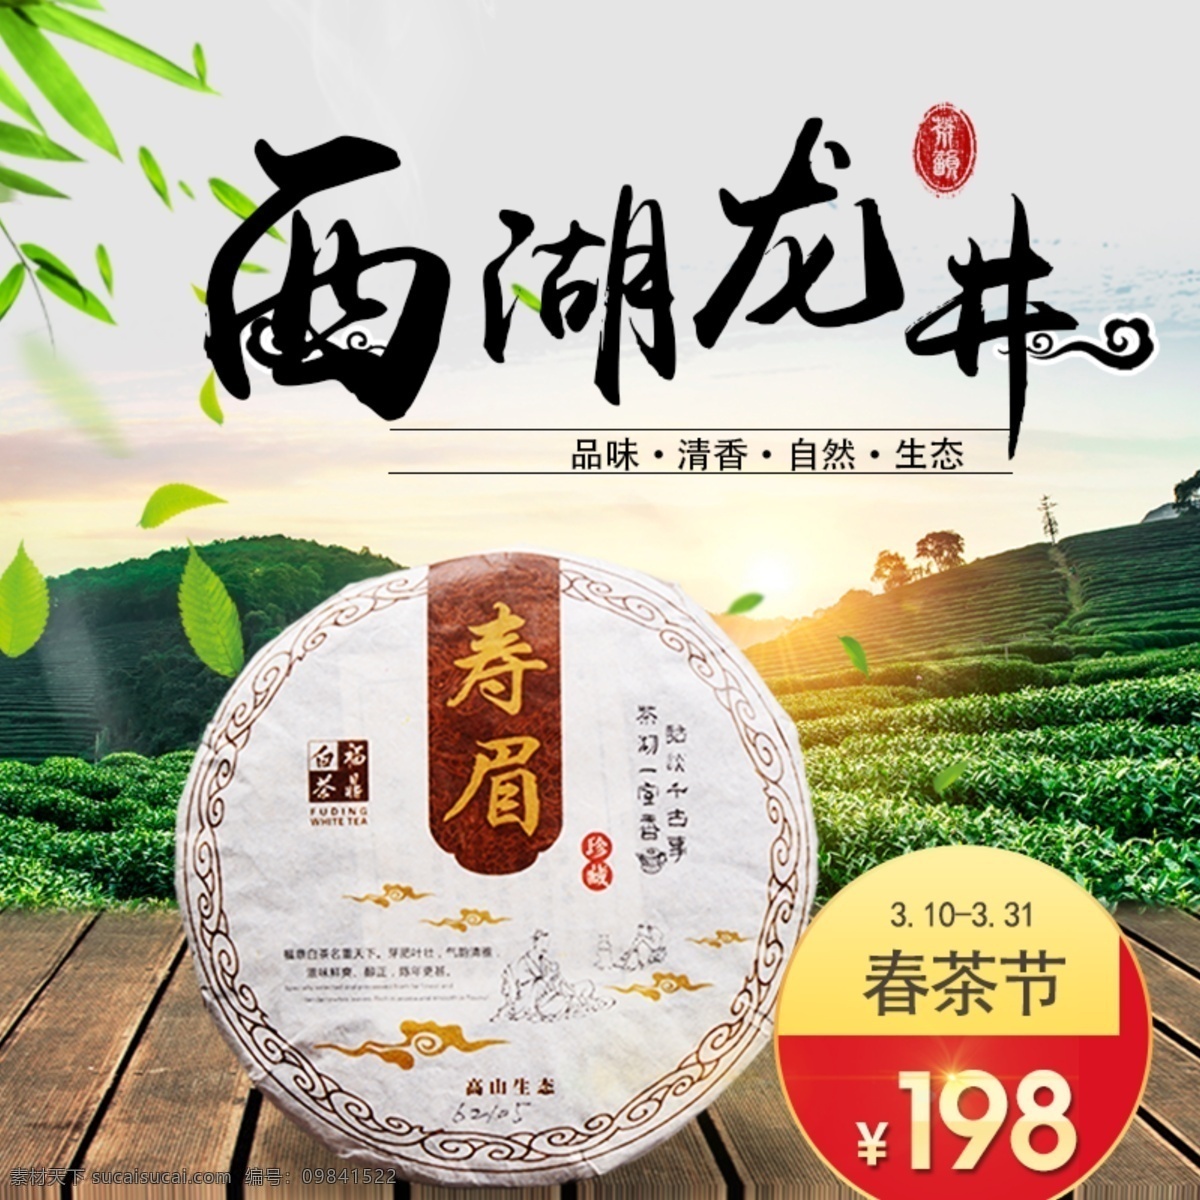 西湖龙井 春茶节 茶 美味 清香 原生态 茶叶 淘宝界面设计 淘宝 广告 banner